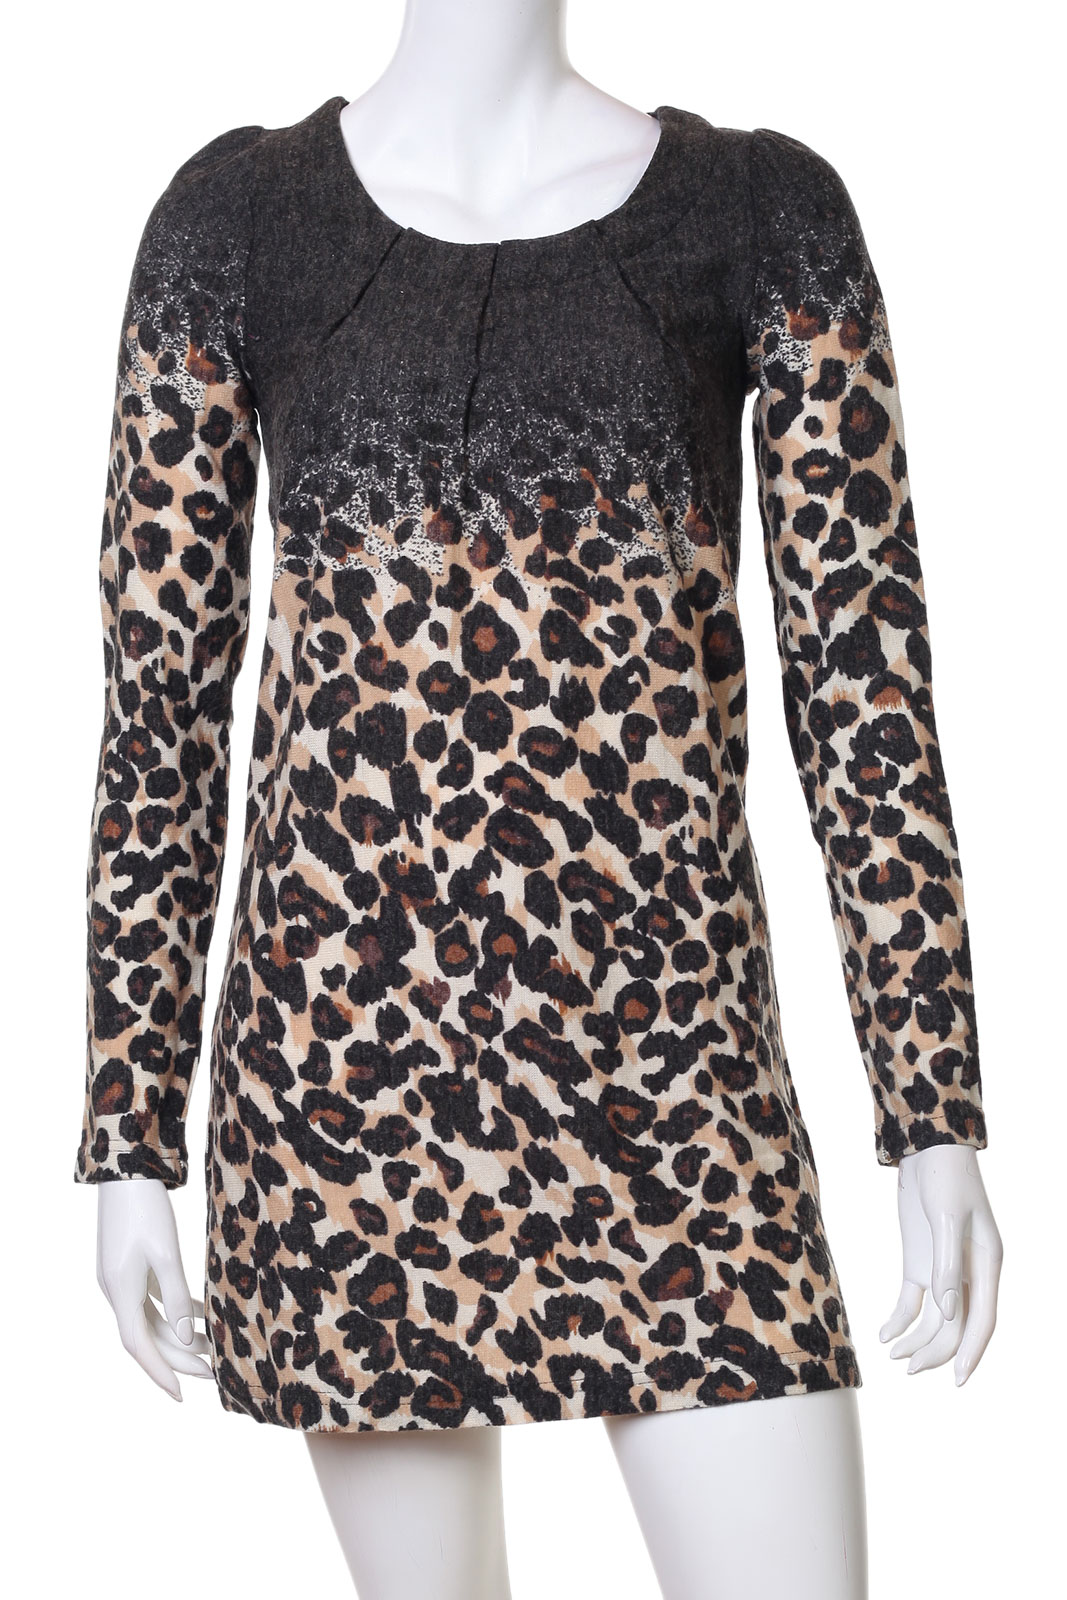 Хорошенькое платье с микс-леопардовым принтом  - закупись к лету по самым НИЗКИМ ценам! №6102*